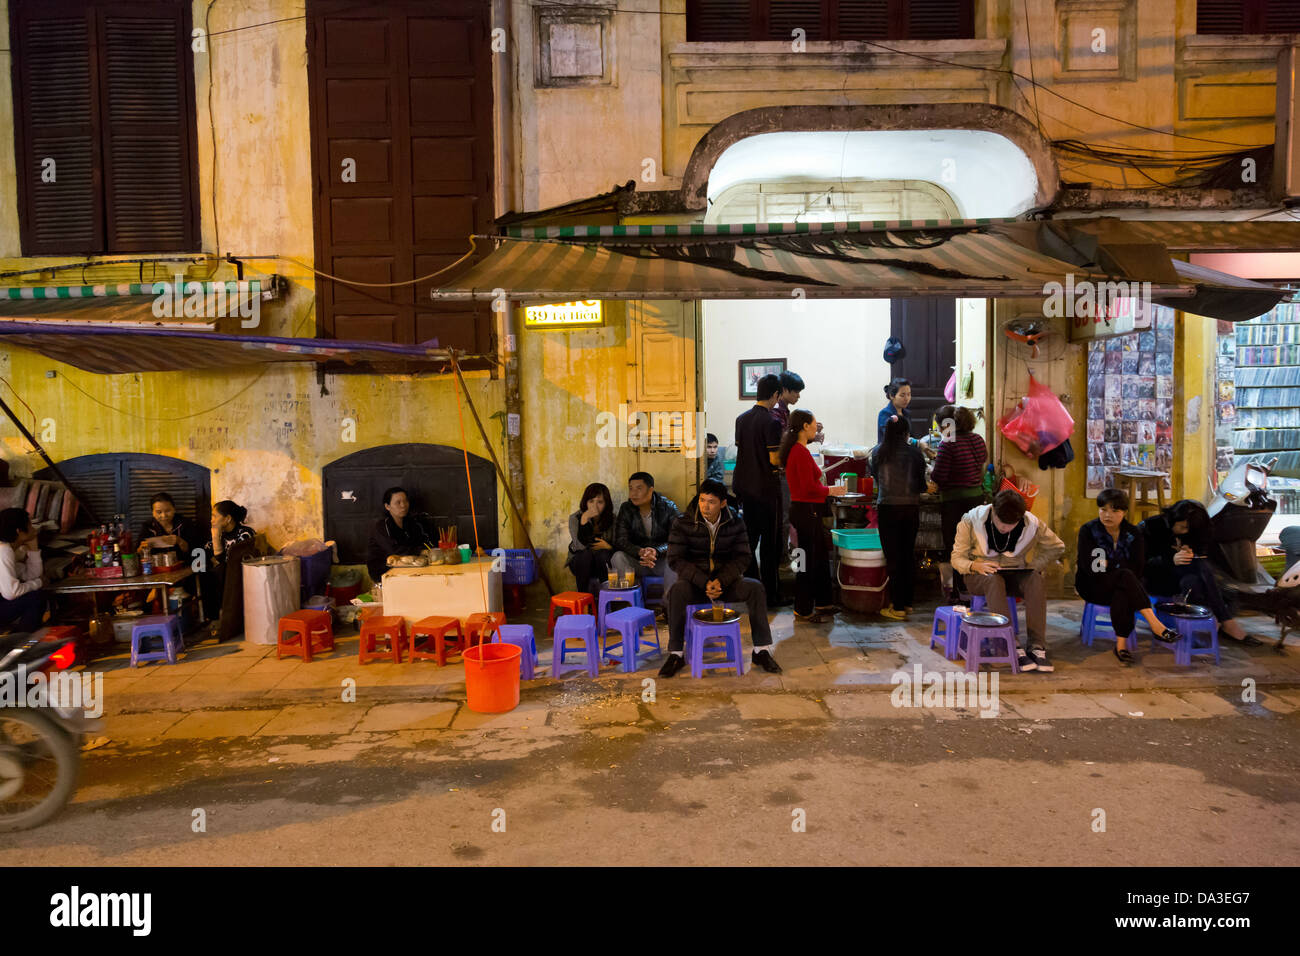 Durante la notte la vita di strada nel quartiere vecchio di Hanoi, Vietnam Foto Stock